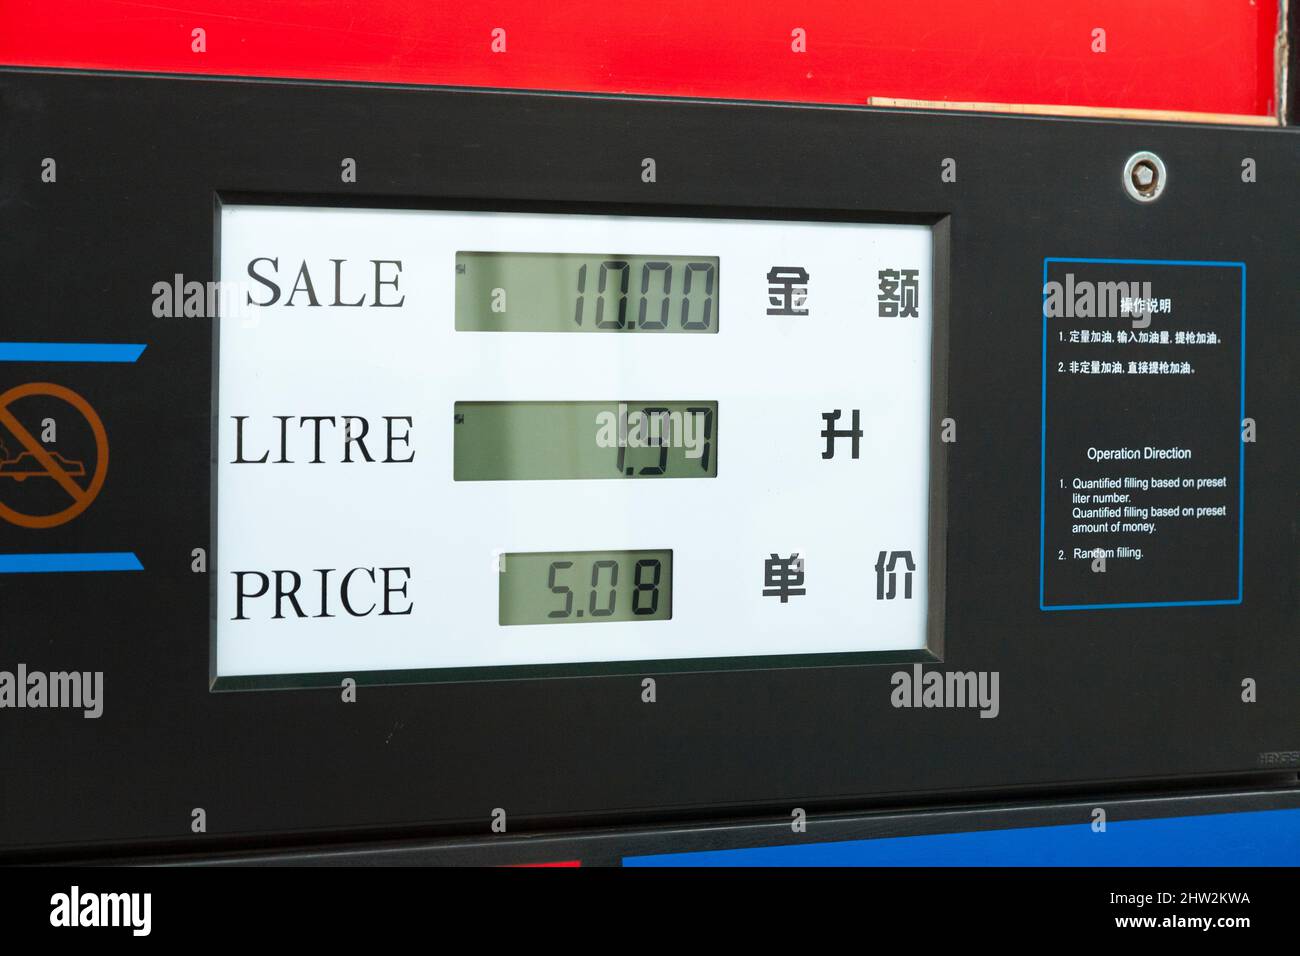 Pompa benzina cinese che vende / distribuisce 93 ottani di benzina a  Tianshui, provincia di Gansu, Cina nord-occidentale. PRC. La quantità di  vendita, il prezzo totale, il prezzo al litro sono visualizzati